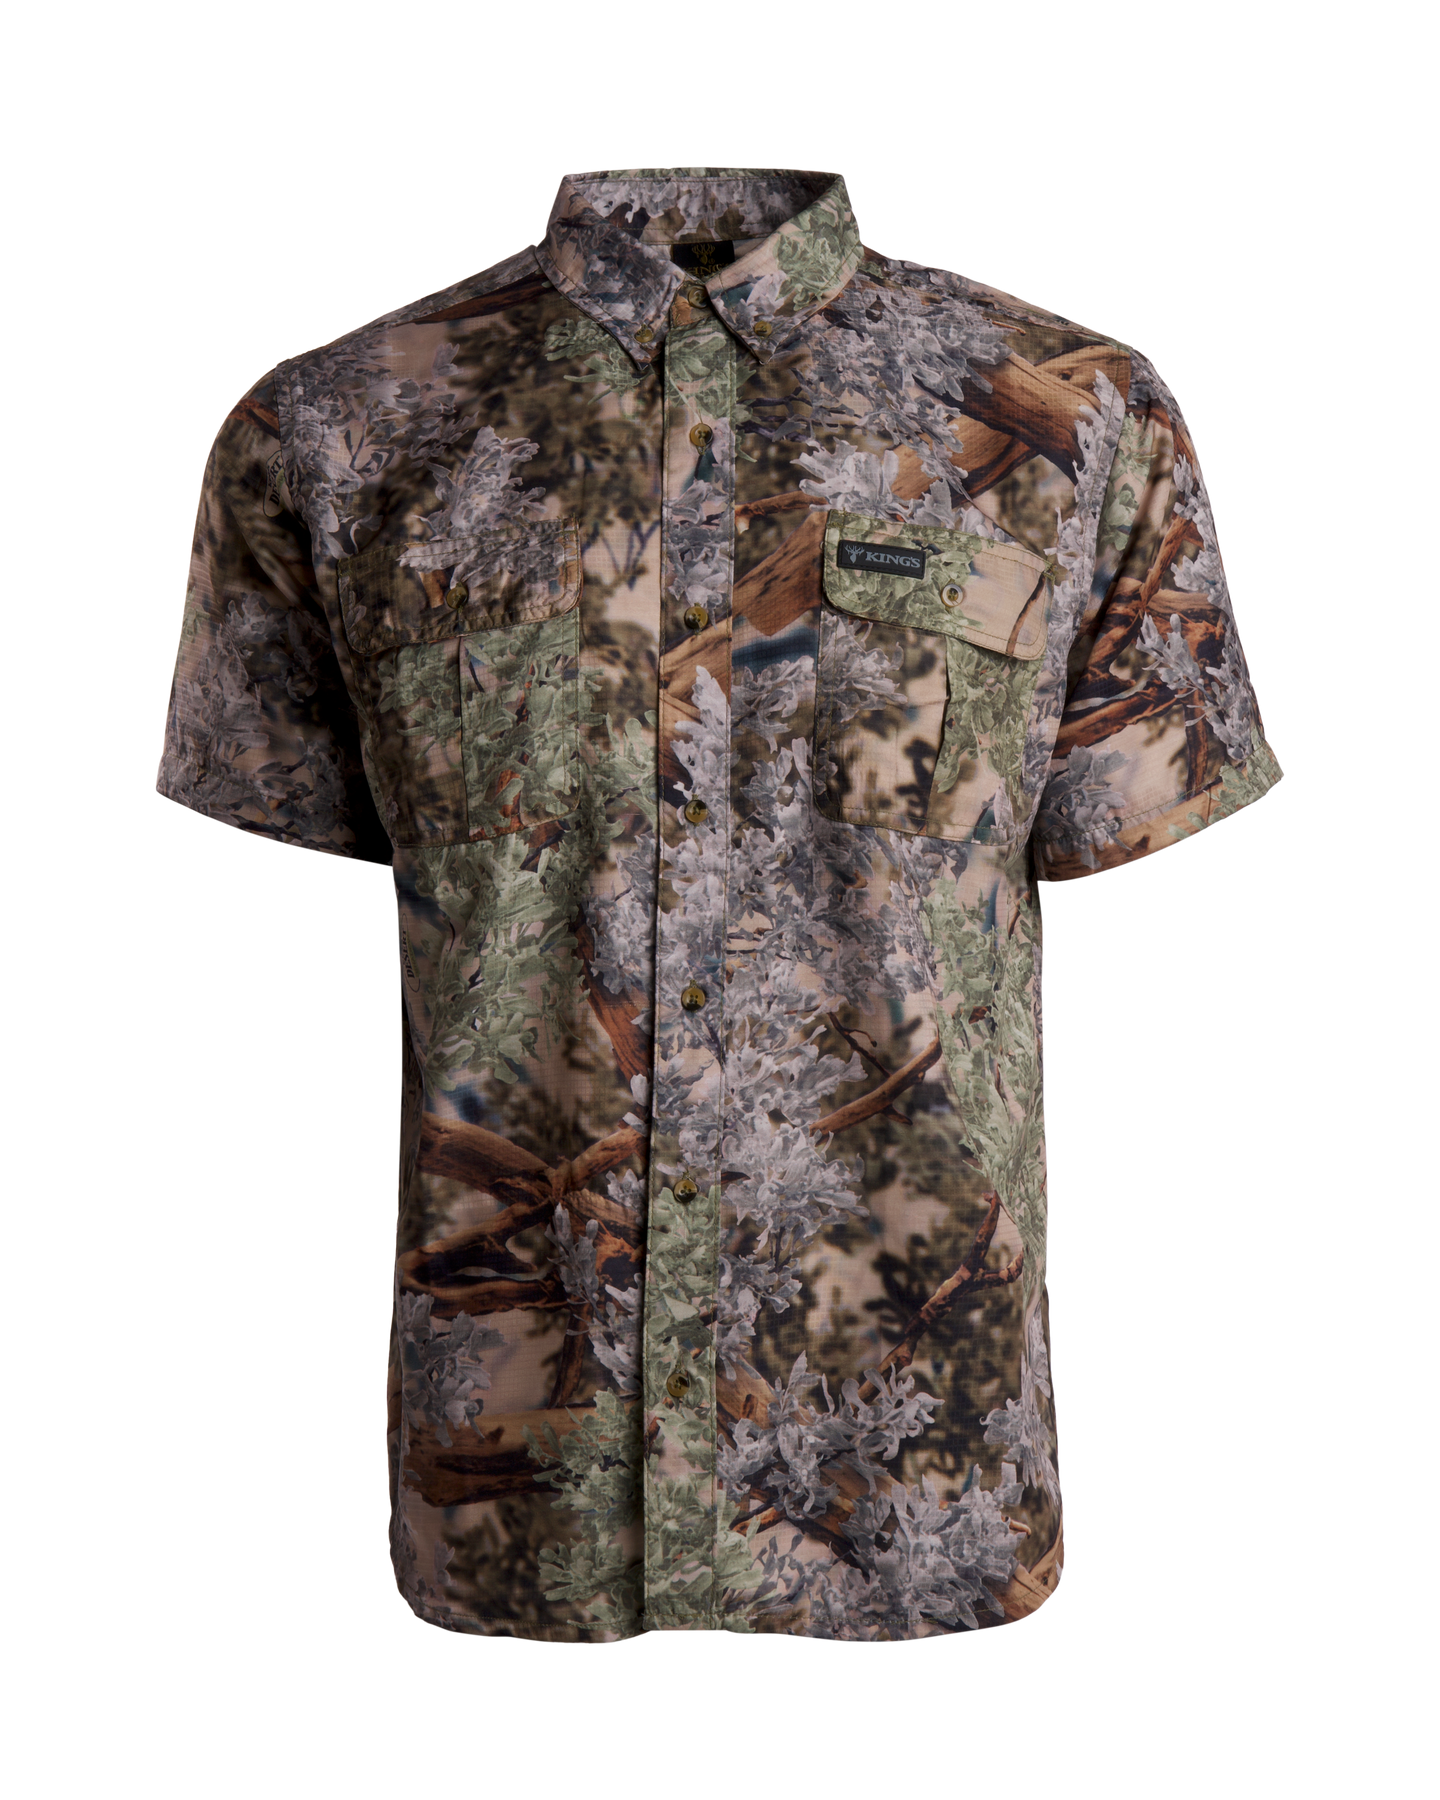 King's Camo Hunter Safari Short Sleeve Shirt | Size 2XL